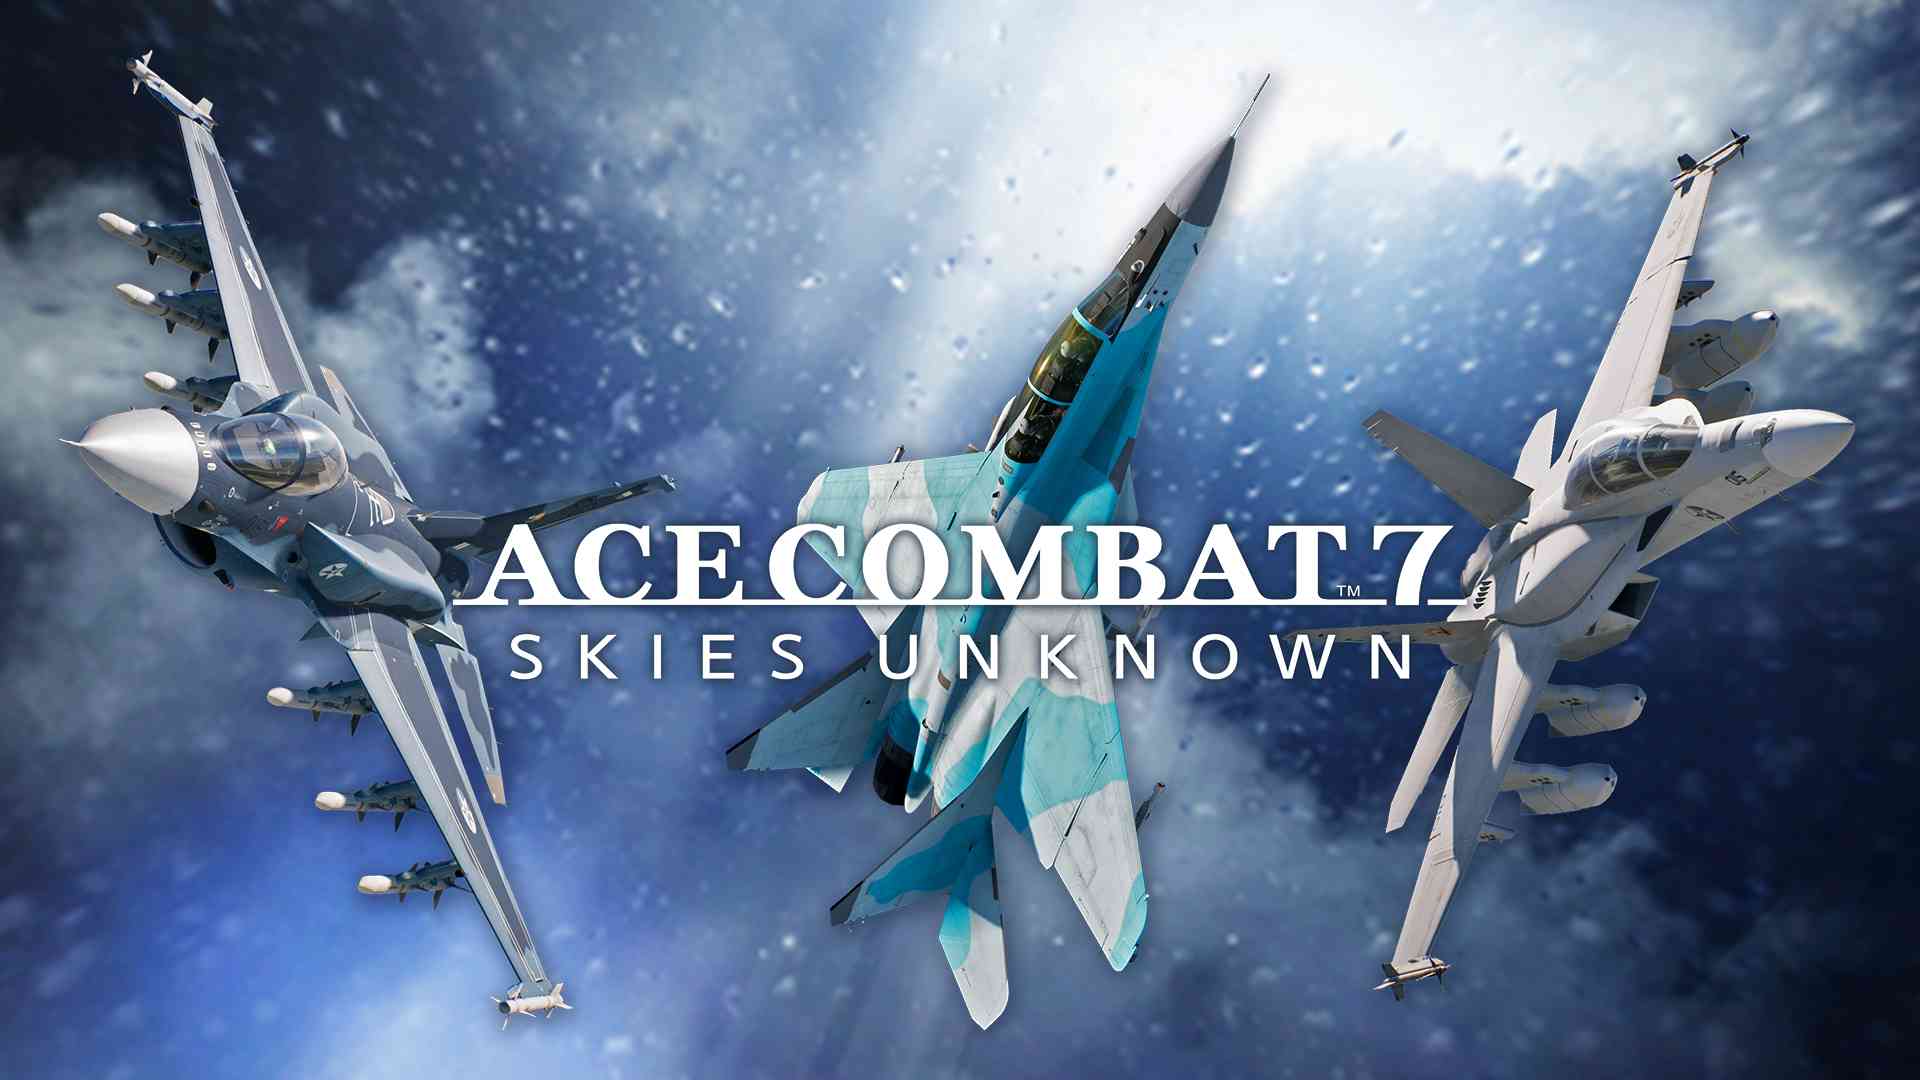 ACE COMBAT™7: SKIES UNKNOWN - Ensemble de séries d'aéronefs de pointe